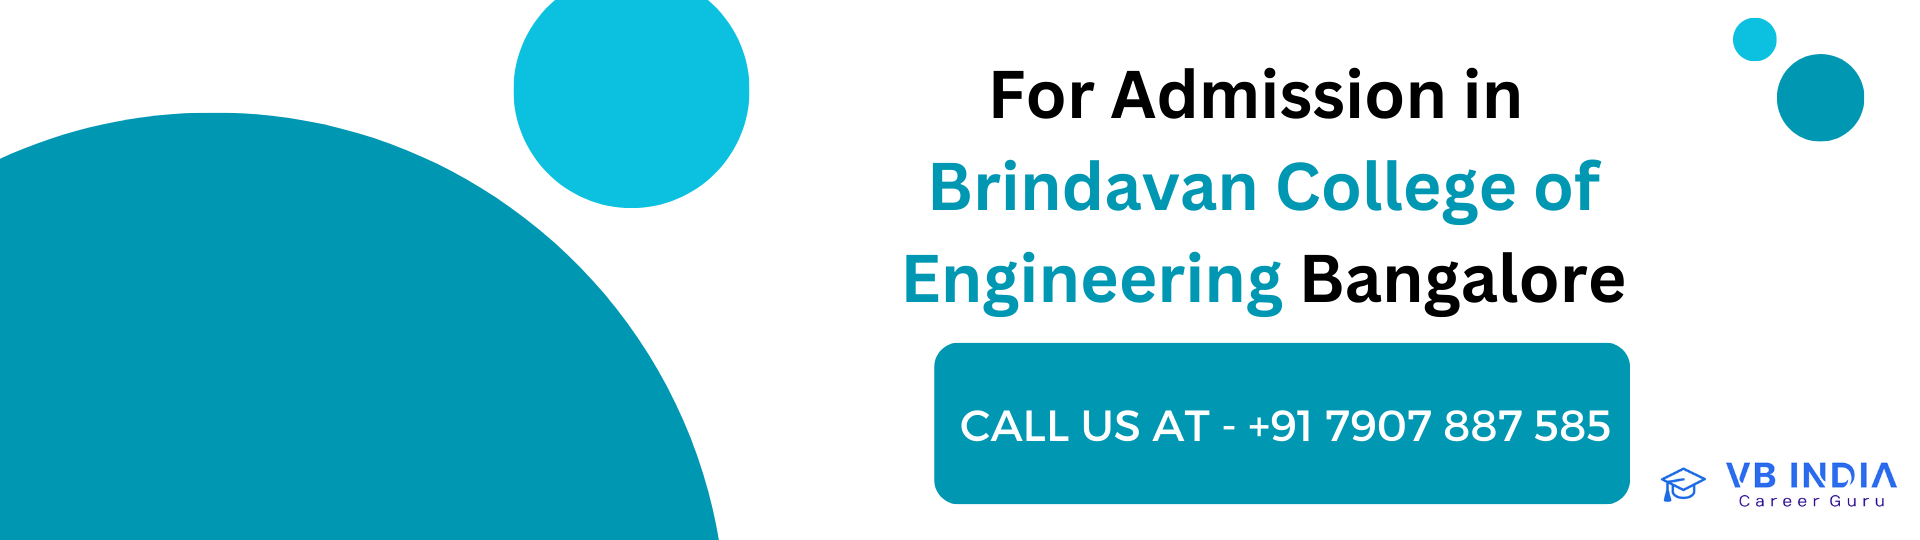 Brindavan-College-of-Engineering